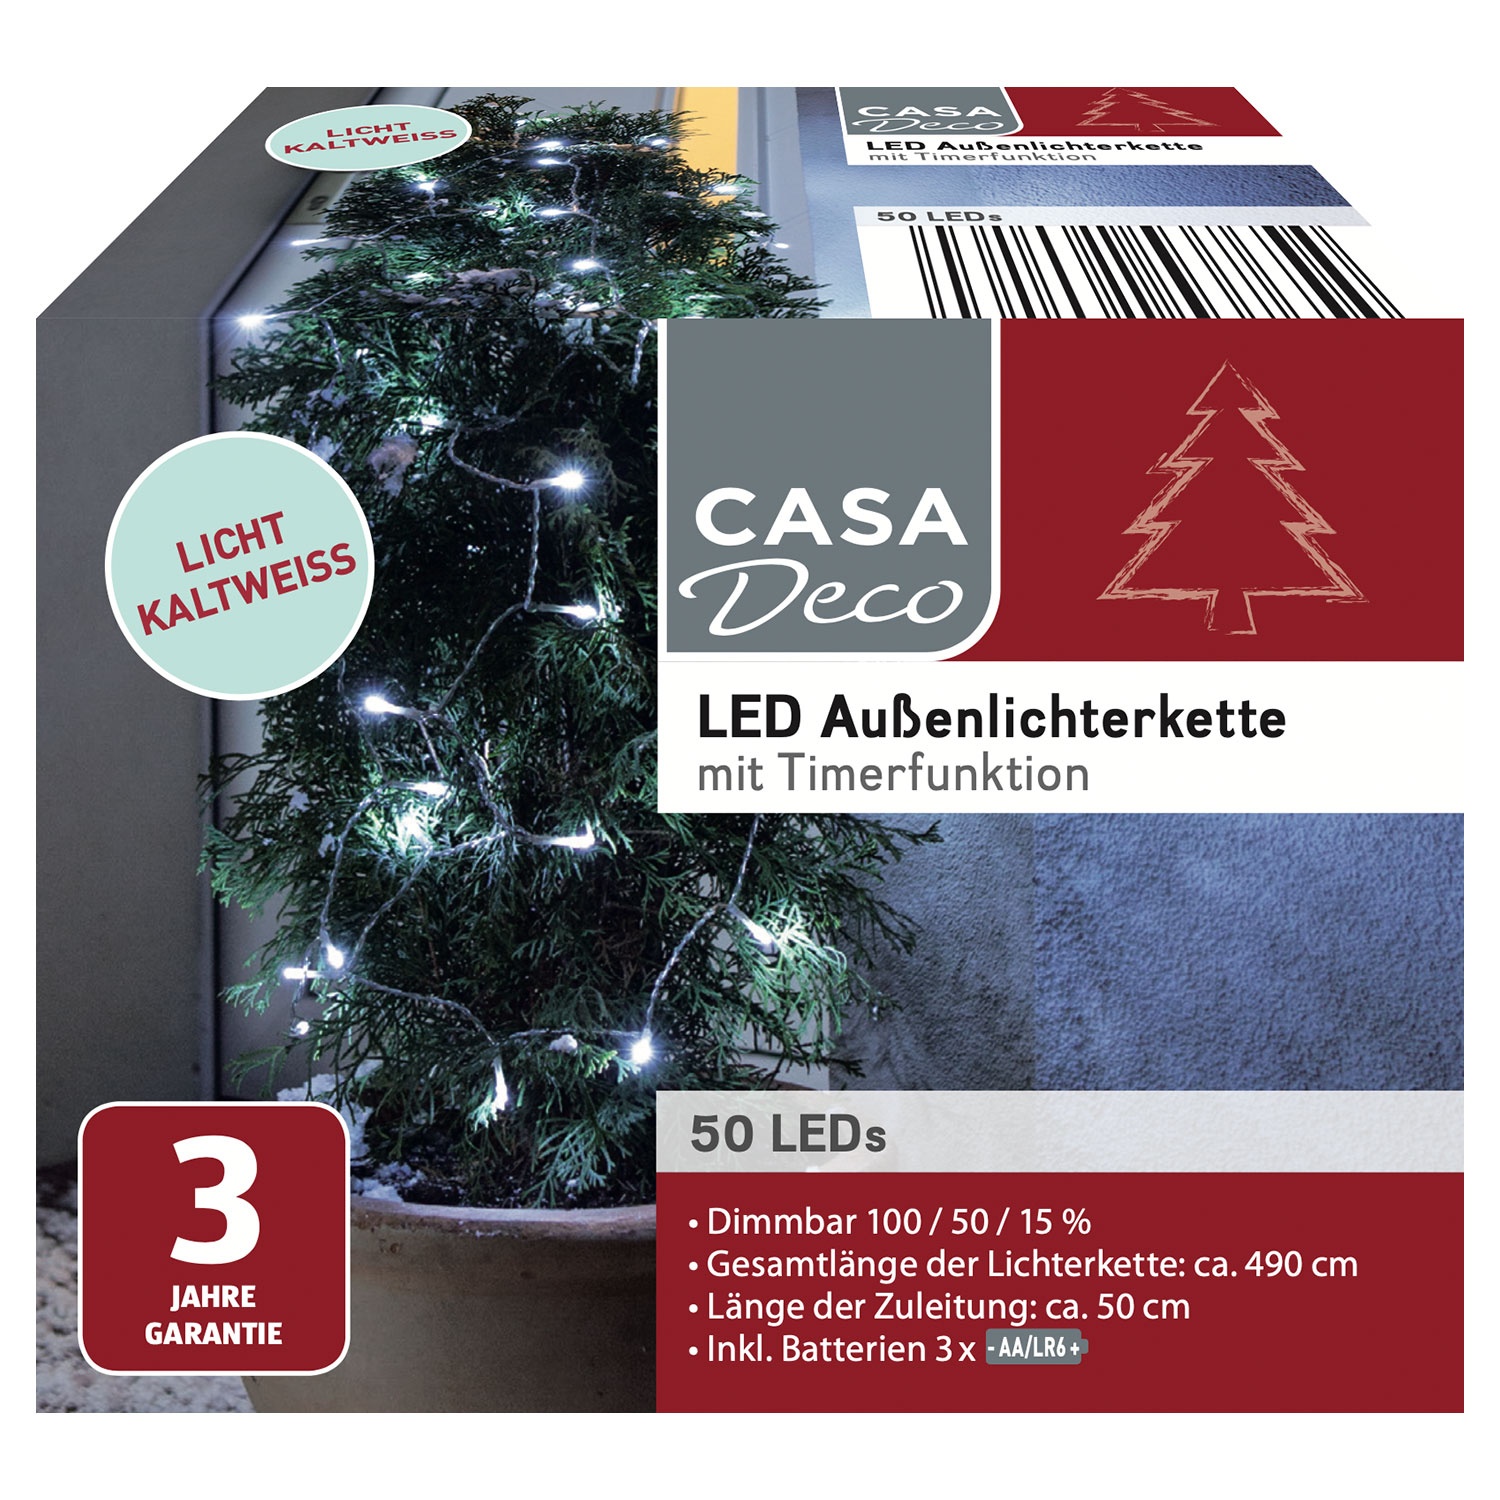 CASA DECO LED-Außenlichterkette